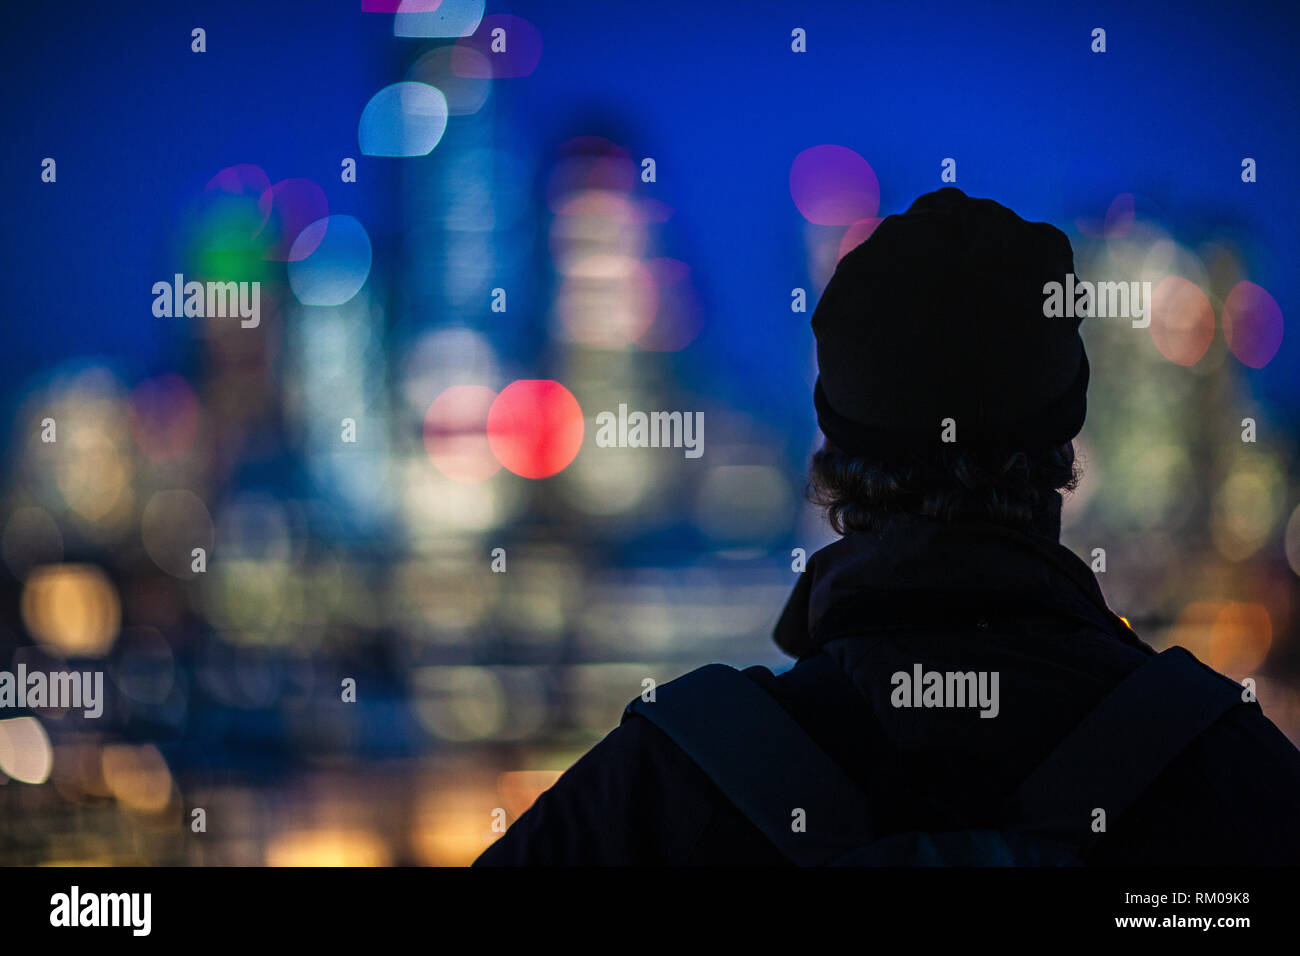 City of London Night Lights - ein Besucher blickt vom Tate modern Viewing Deck aus auf die Lichter des Finanzviertels der City of London. London Bokeh. Stockfoto